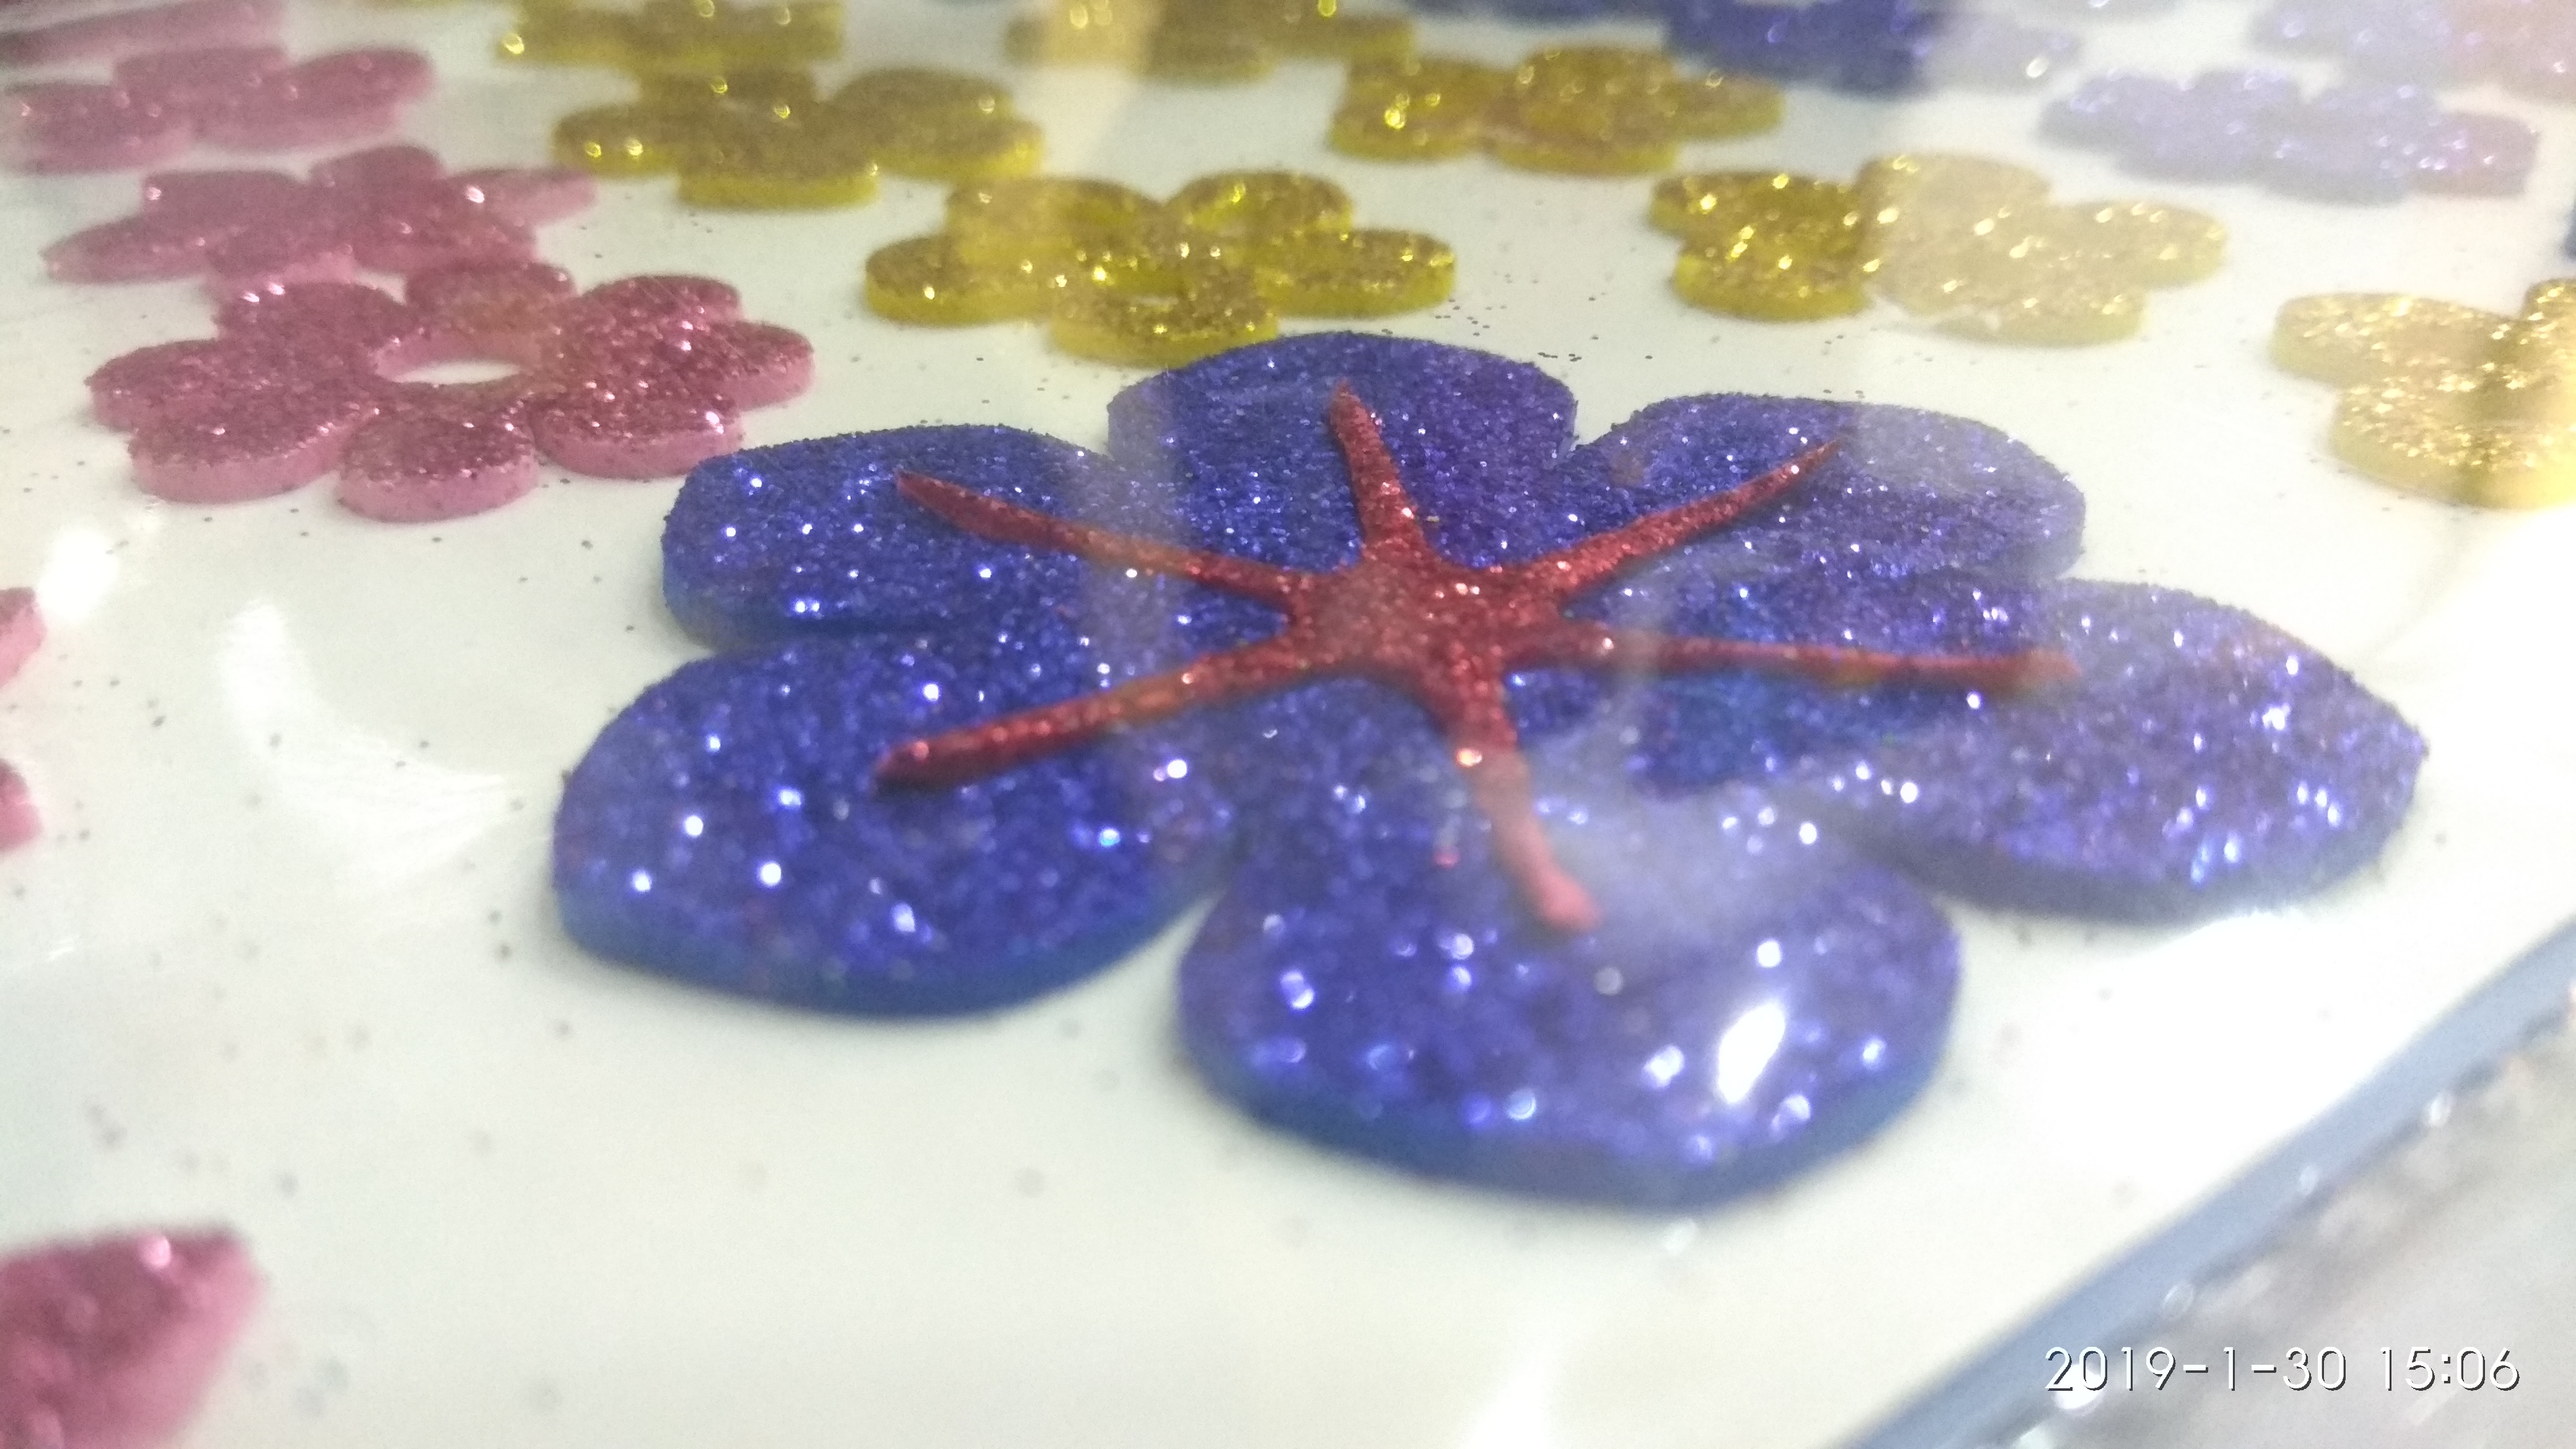 Craft Villa Sparkle Flower Glitter sticker